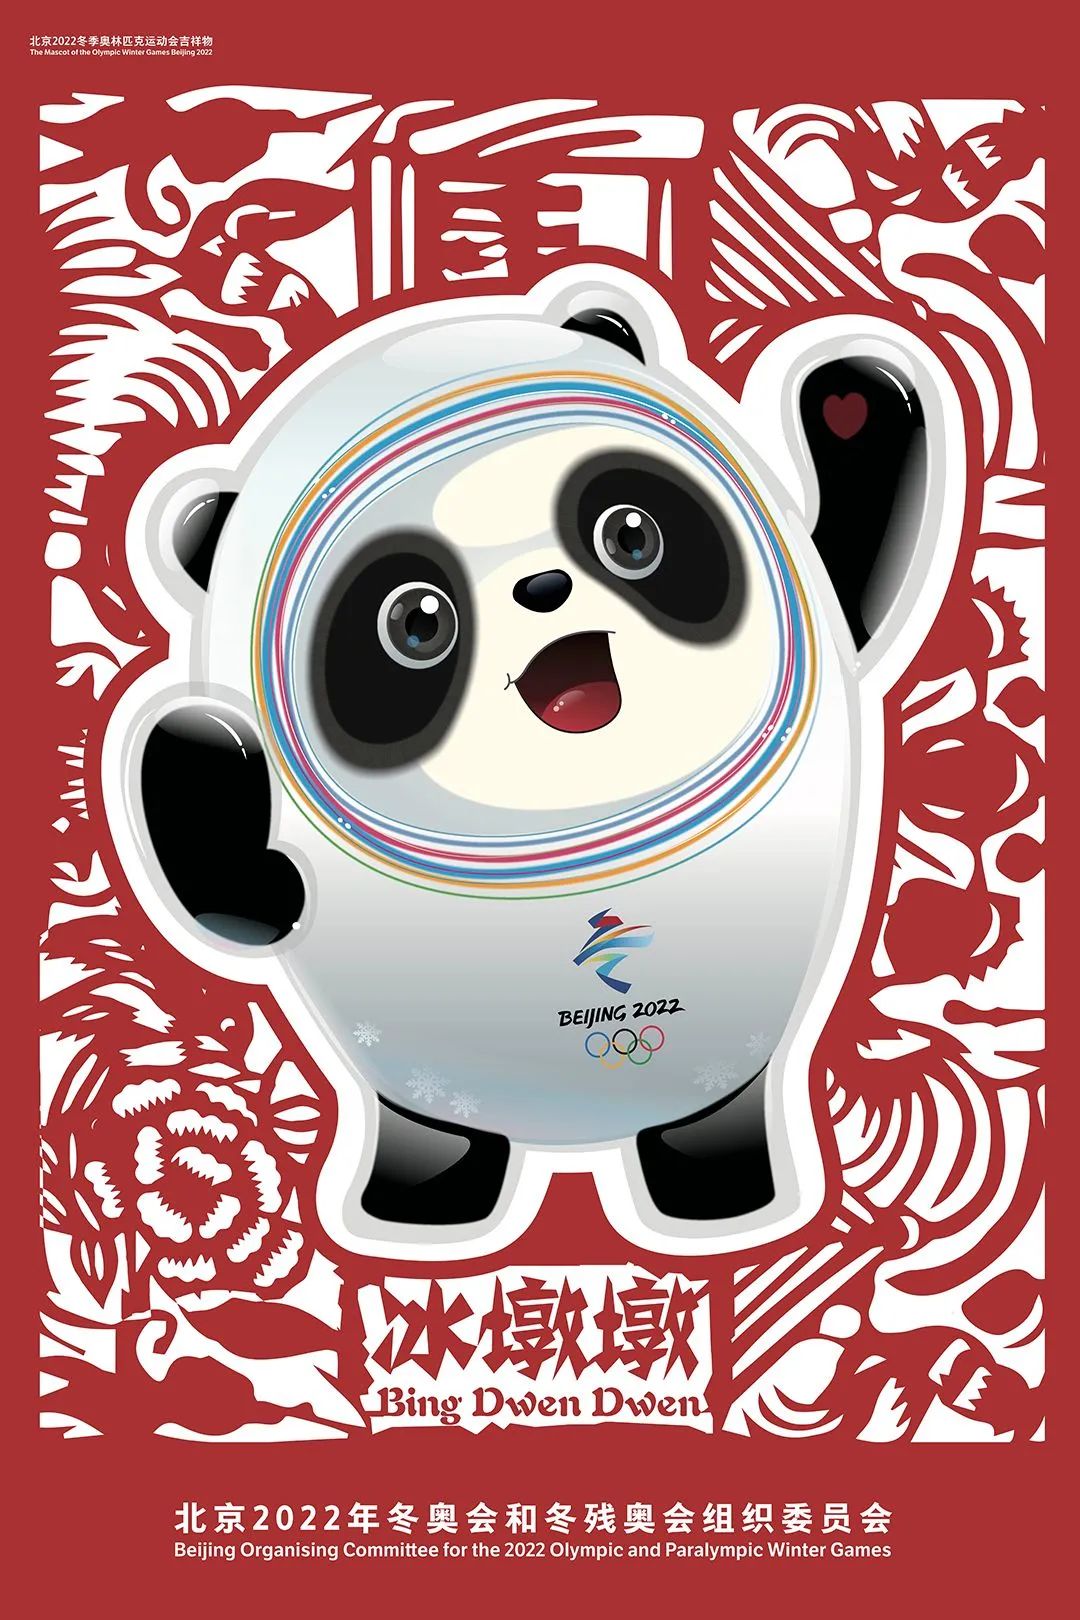 关注北京2022当年画娃娃遇上冬奥项目会产生怎样的化学反应